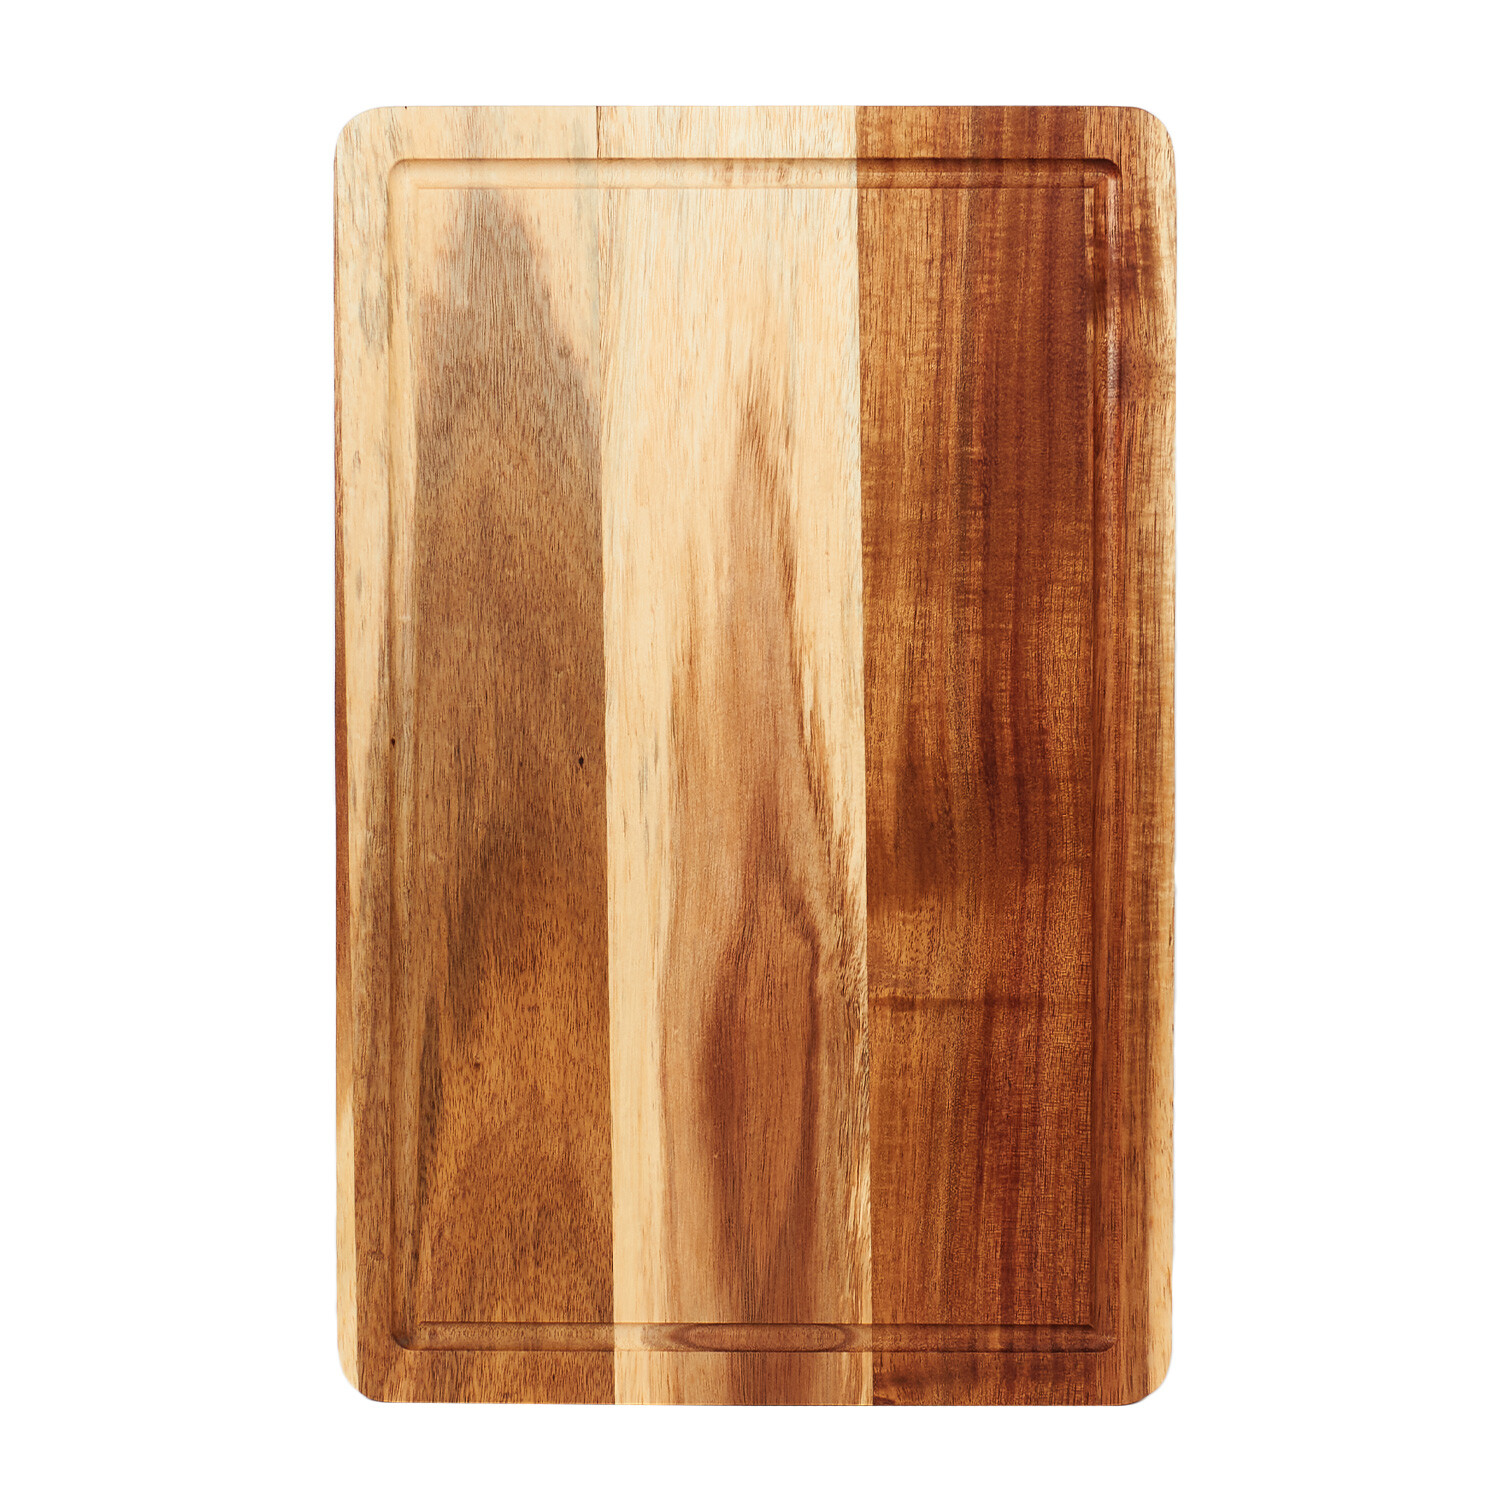 Acacia Traditional Chopping Board - Brown Image 3